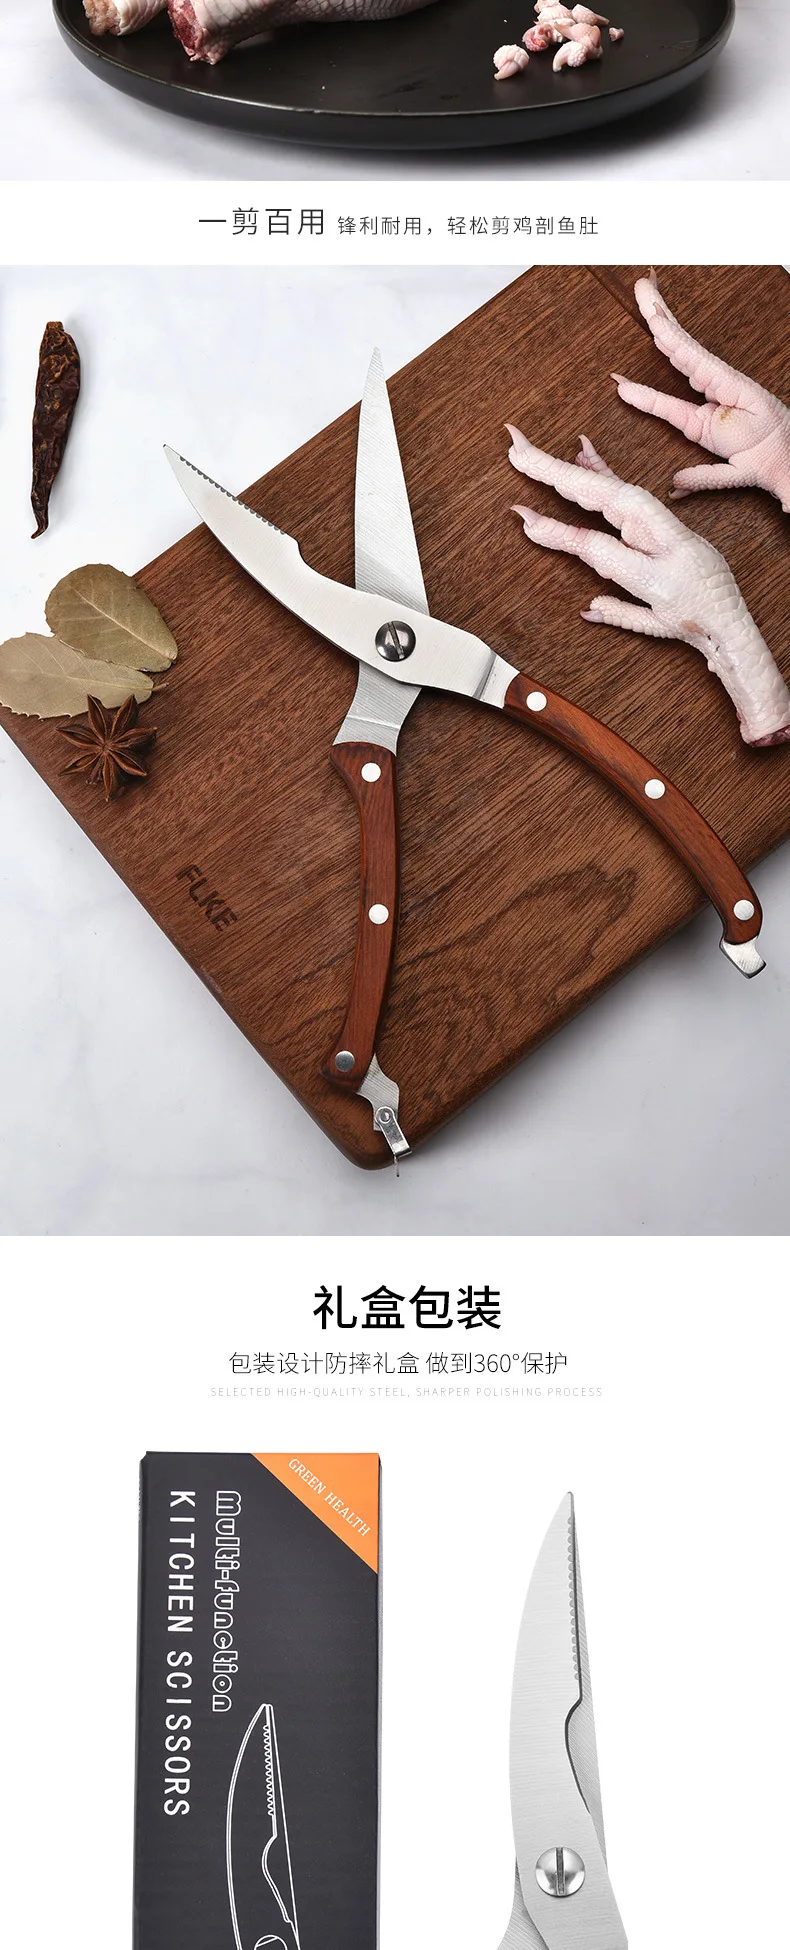 Cai mu bing ножницы из нержавеющей стали кухонные ножницы для пищи Многофункциональные сильные кости плавательный пузырь все-стальные ножницы